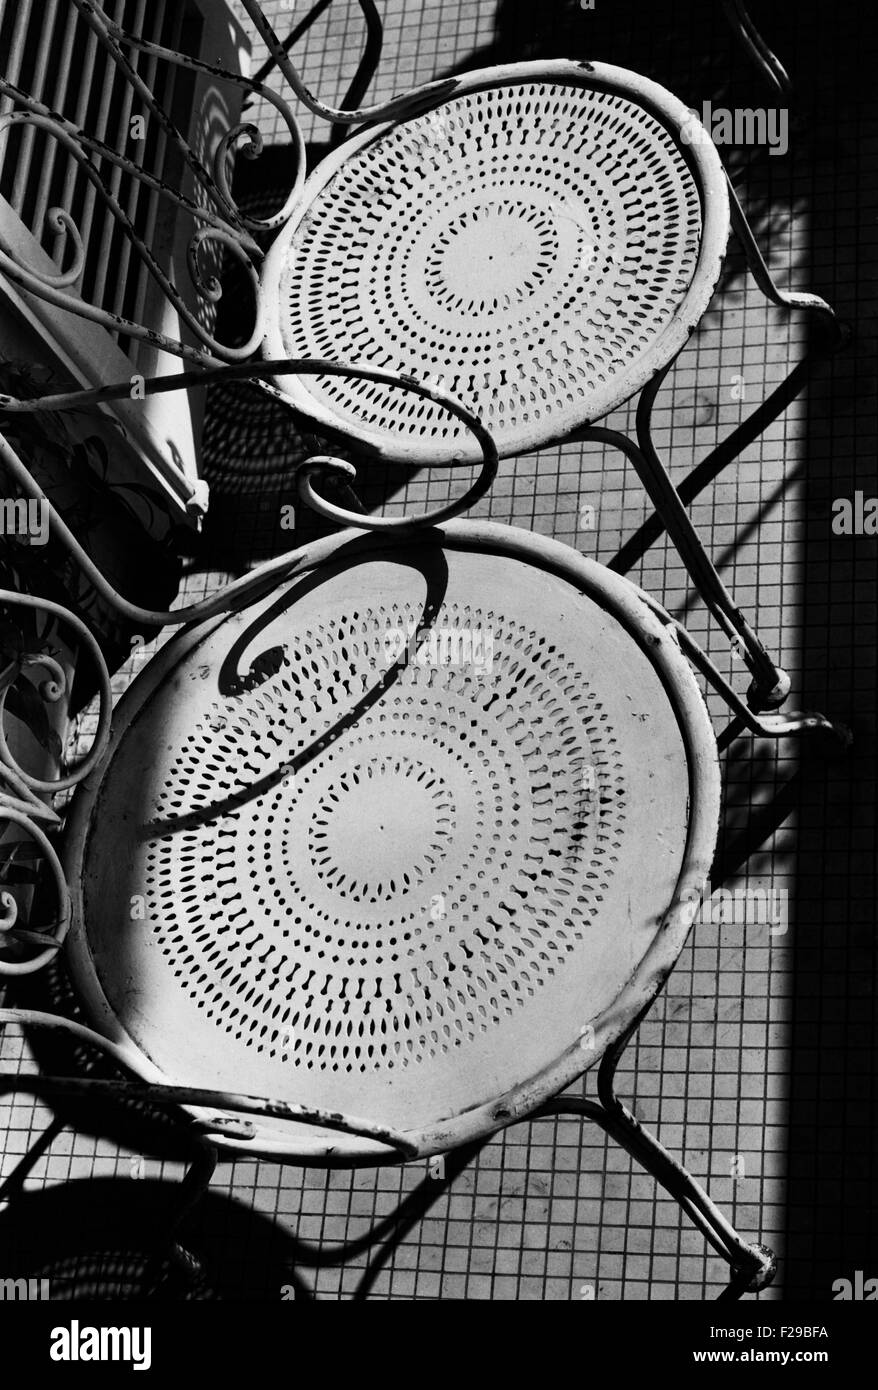 AJAXNETPHOTO. Lardos, Francia. - Terraza - un par de sillas 1950 sillas de jardín de hierro forjado bajo la luz solar del verano. Foto:Jonathan EASTLAND/AJAX Ref:152503 Foto de stock